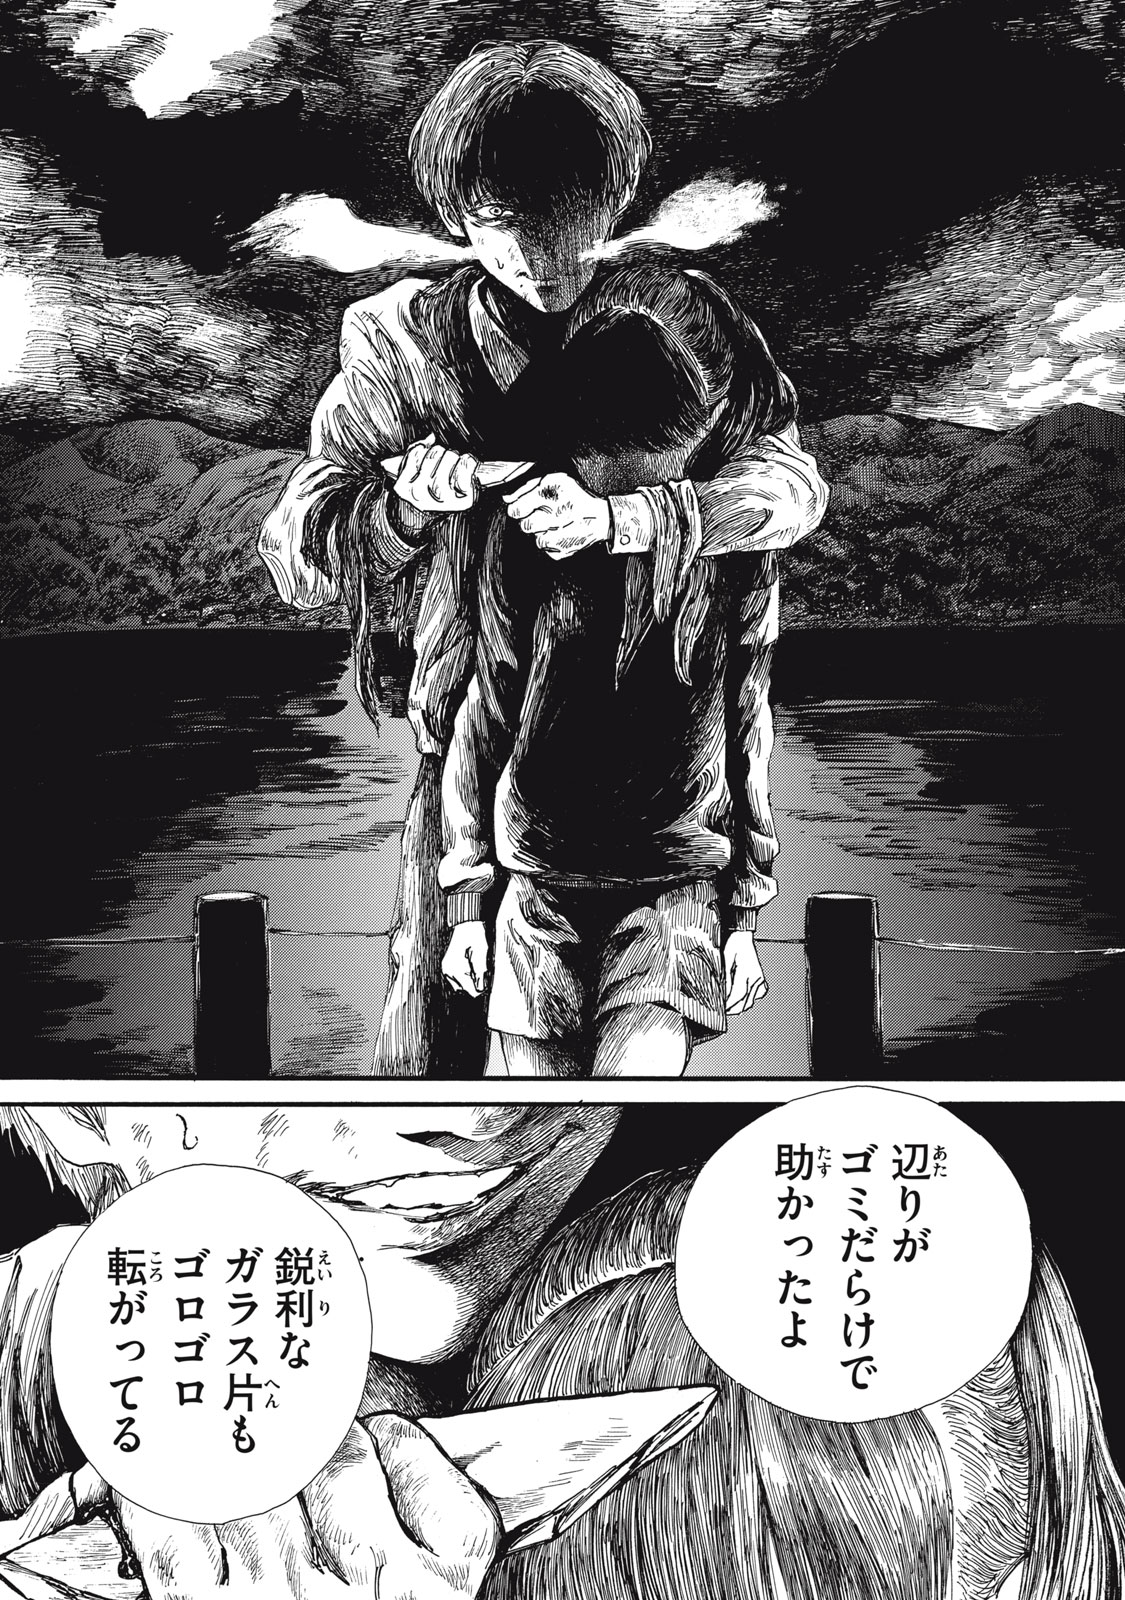 Watashi no Hara no Naka no Bakemono - Chapter 28 - Page 5